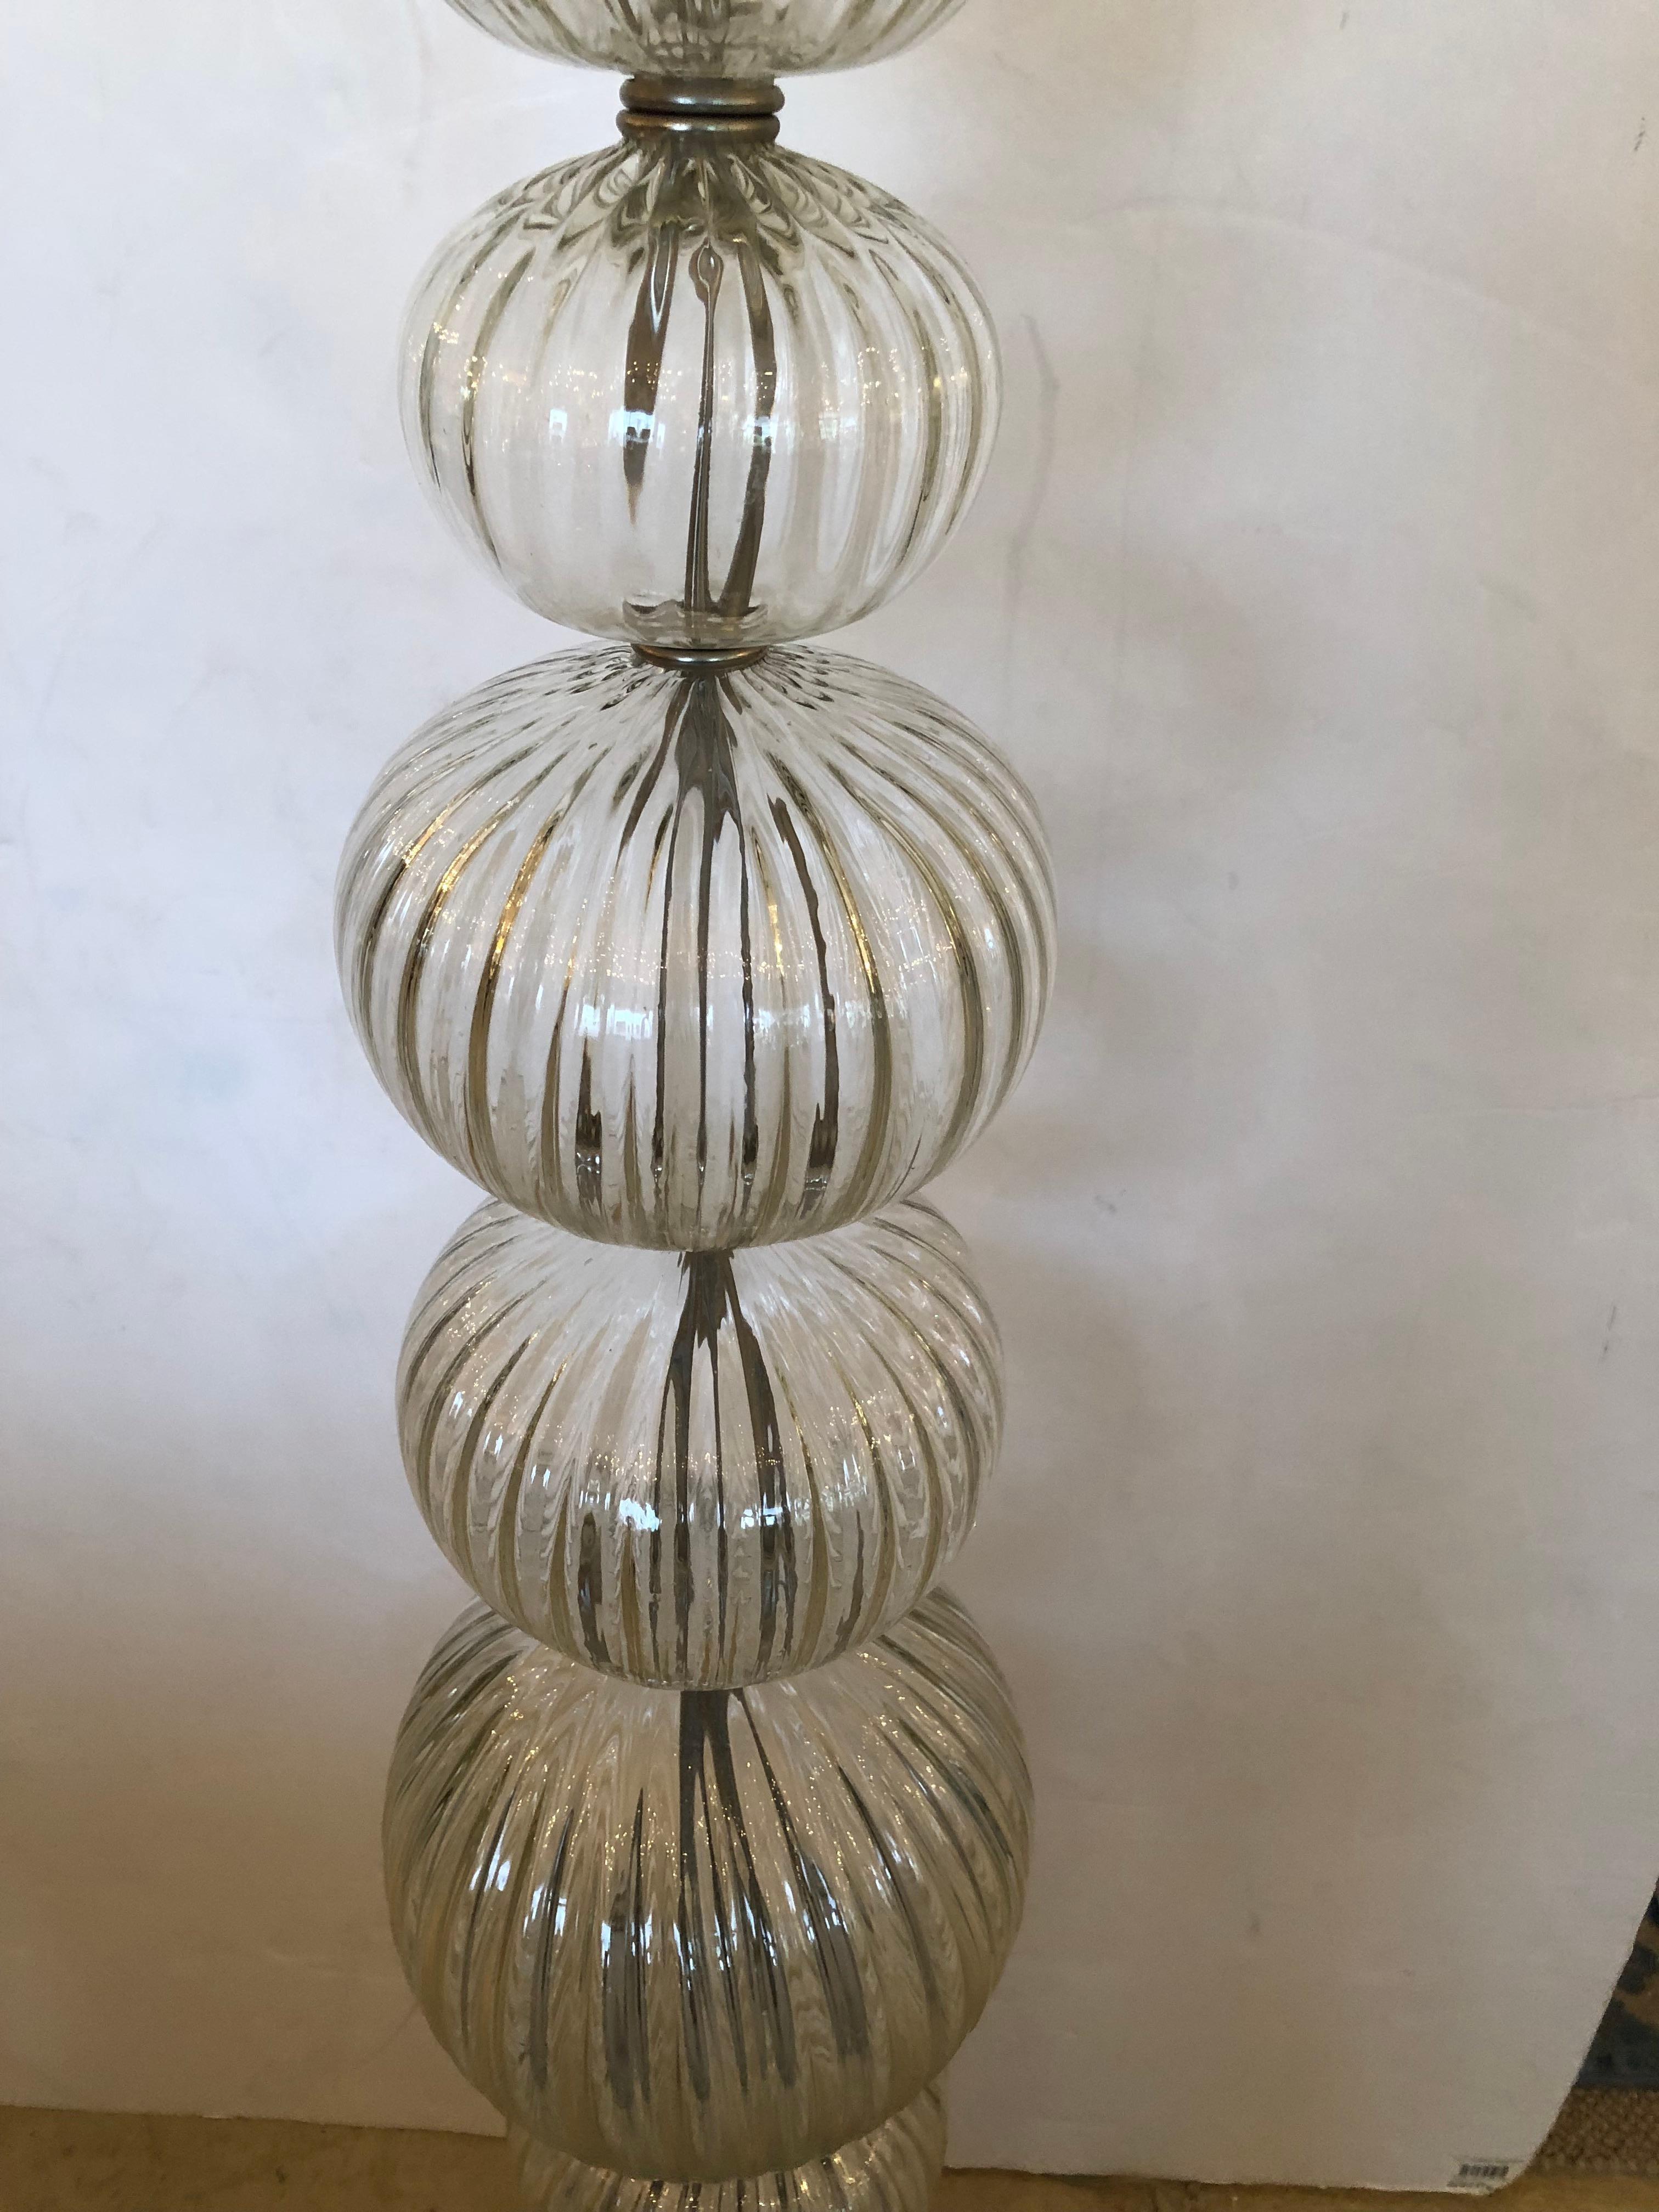 Elegant lampadaire en verre transparent de Murano avec une colonne composée de globes ronds nervurés empilés avec de l'acier entre les deux et une base ronde en acier.  Magnifique fleuron en bronze en forme de flamme au sommet.
L'ombrage est